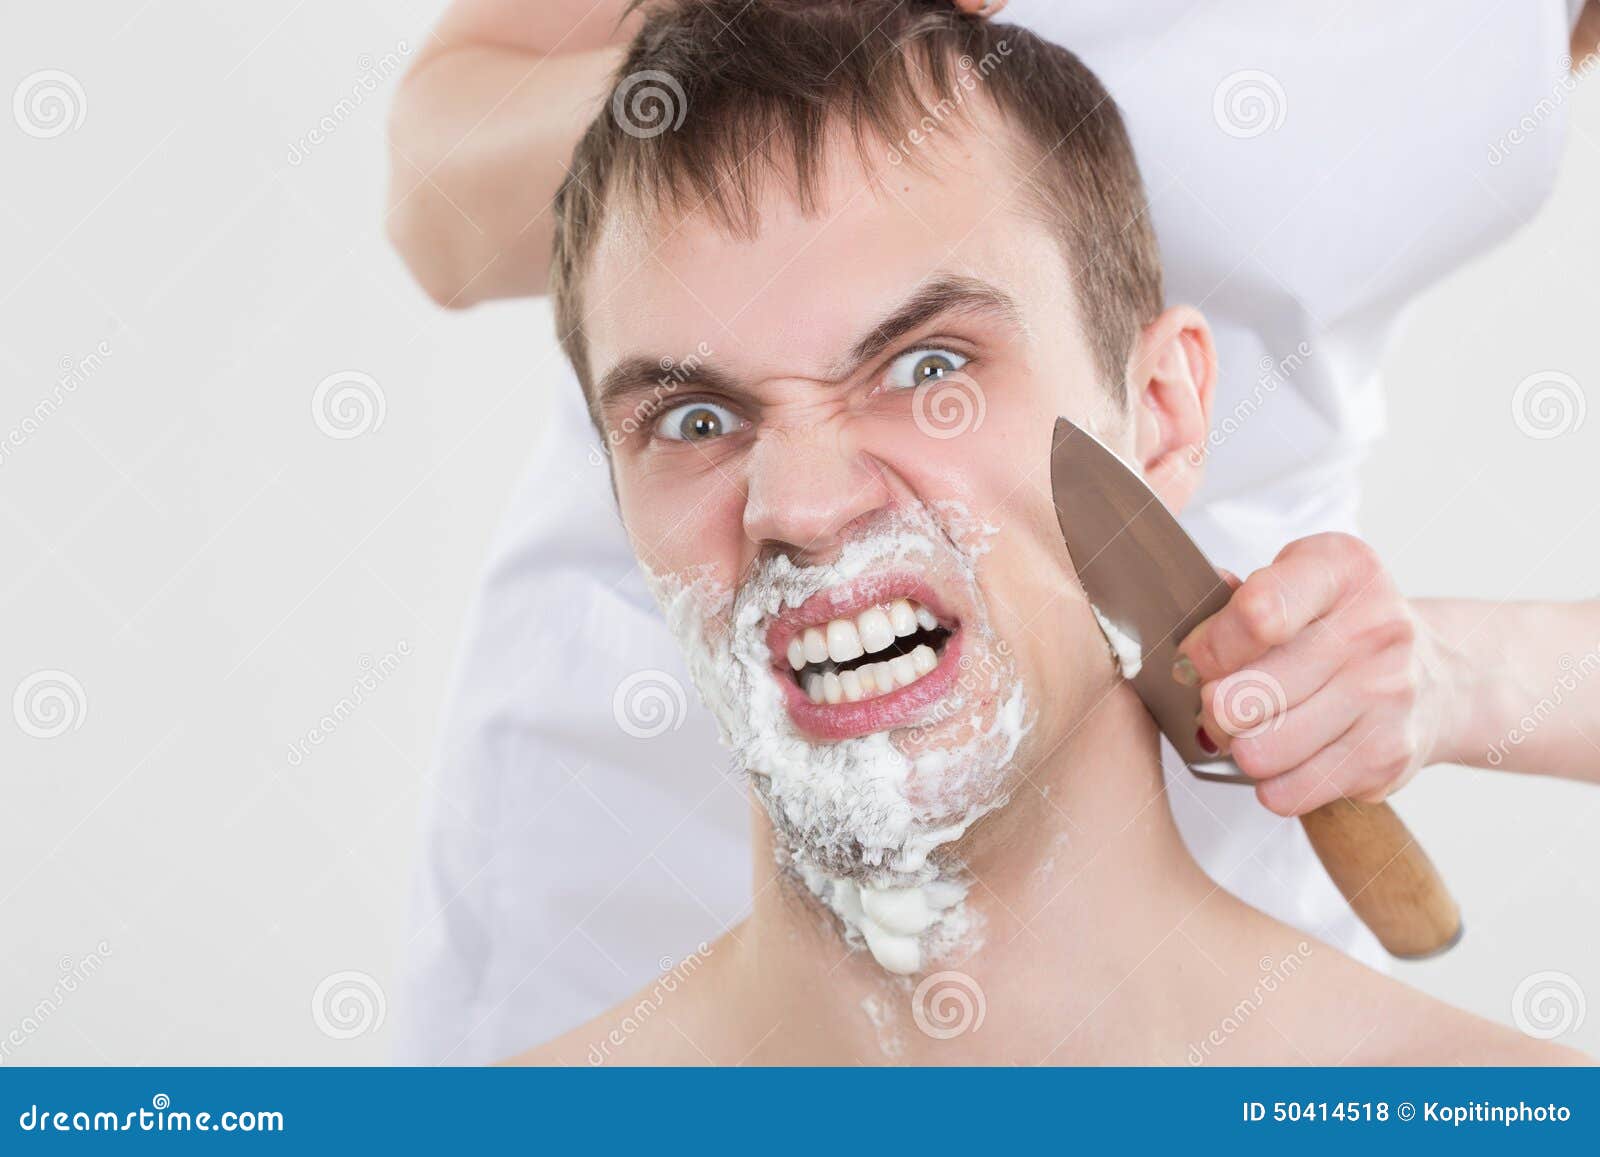 Теток бреют. Мужчина бреется. Нож для бритья.